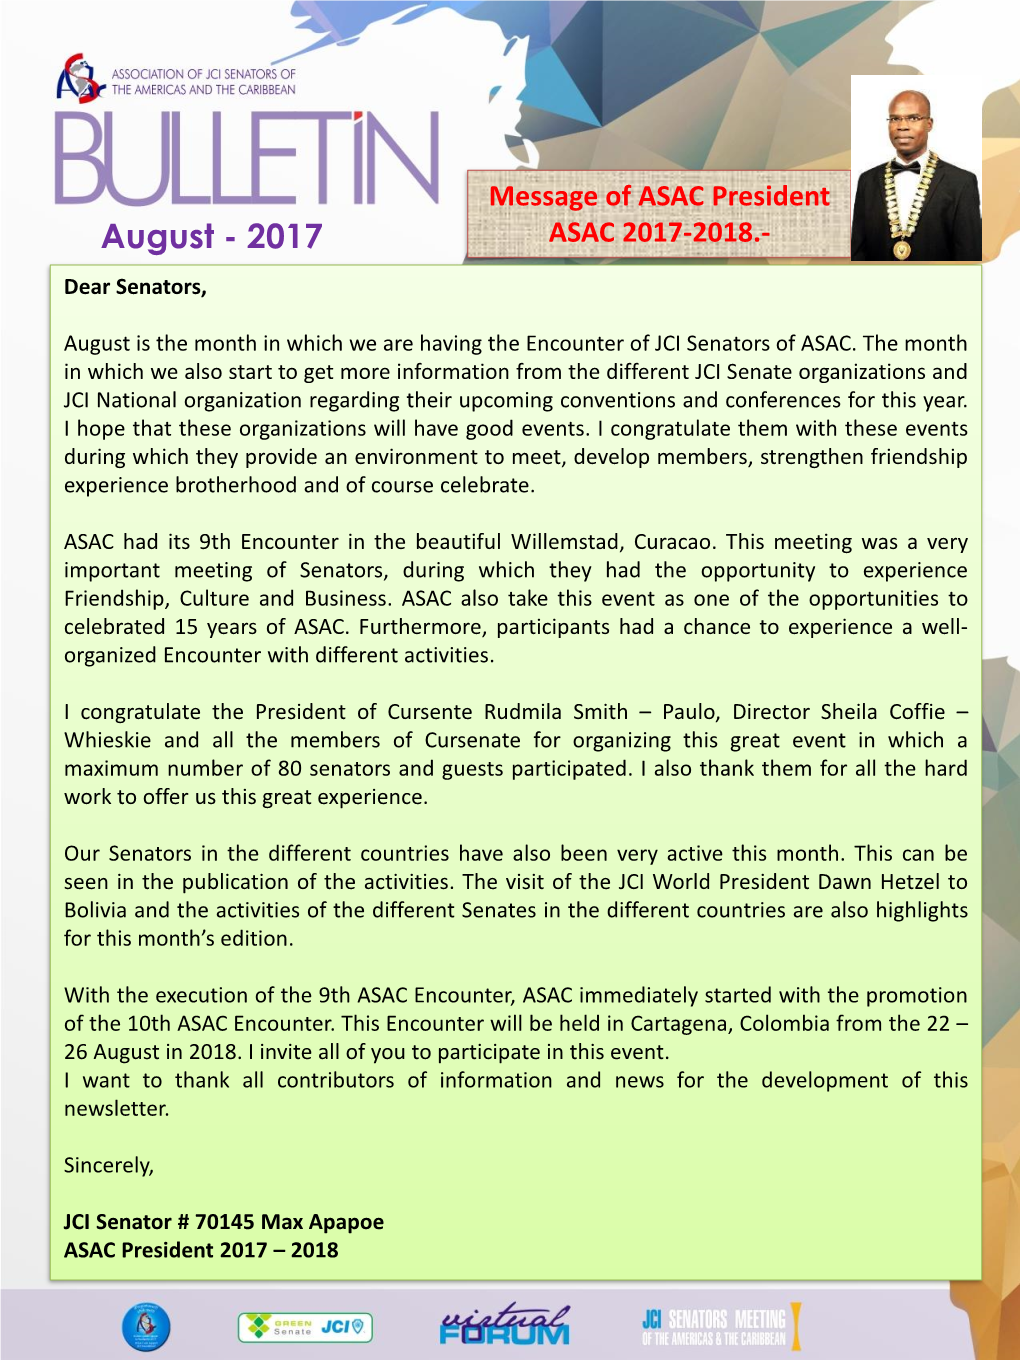 ASAC Bulletin Aug 2017